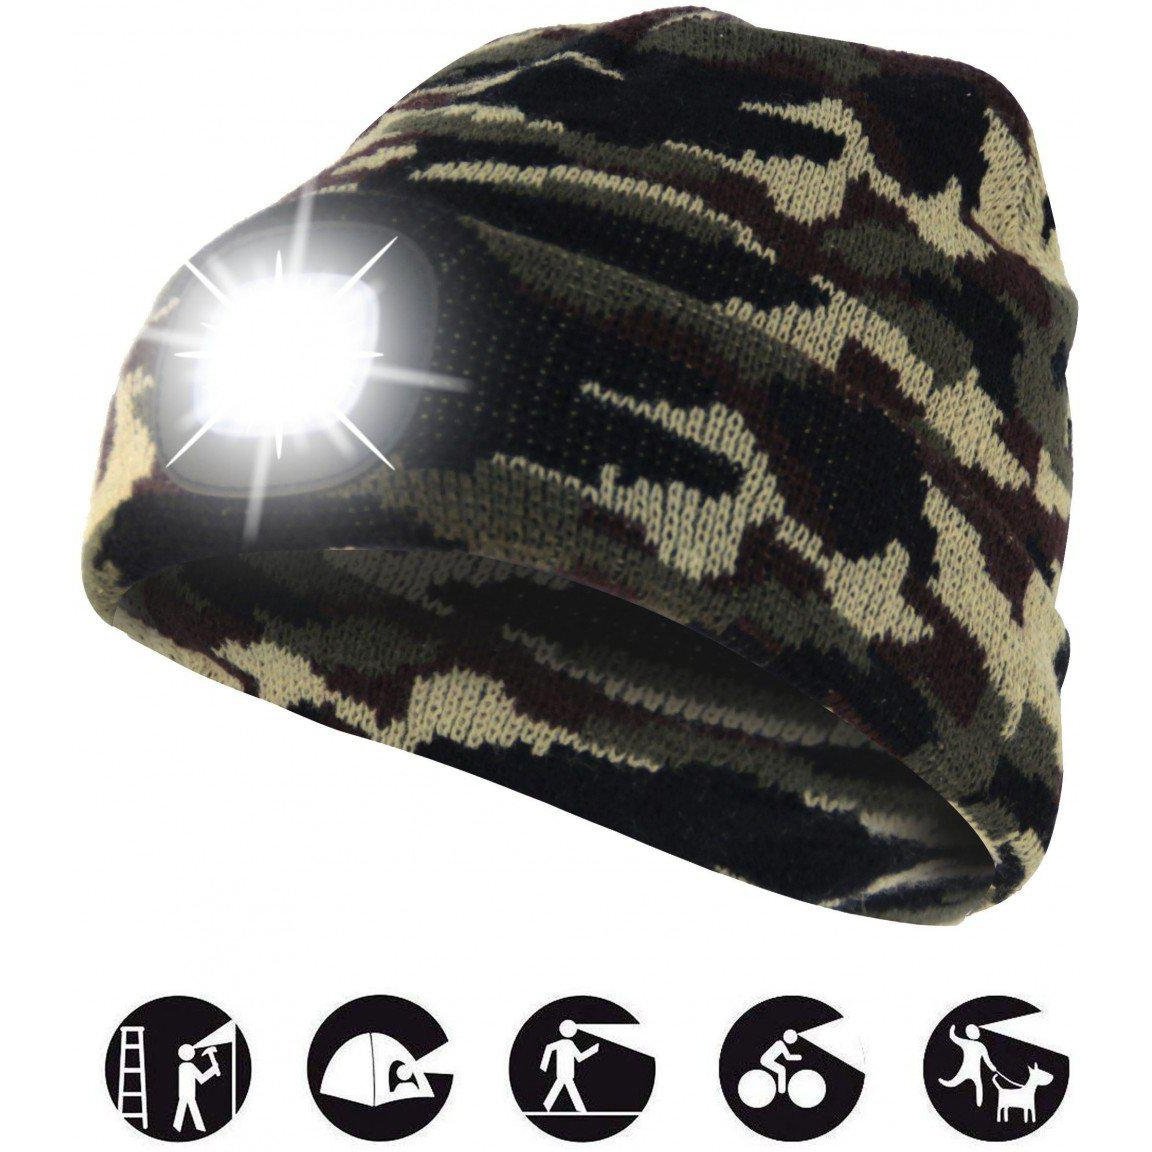 Cappellino Berretto militare caldo e confortevole con luce led frontale ricaricabile via USB